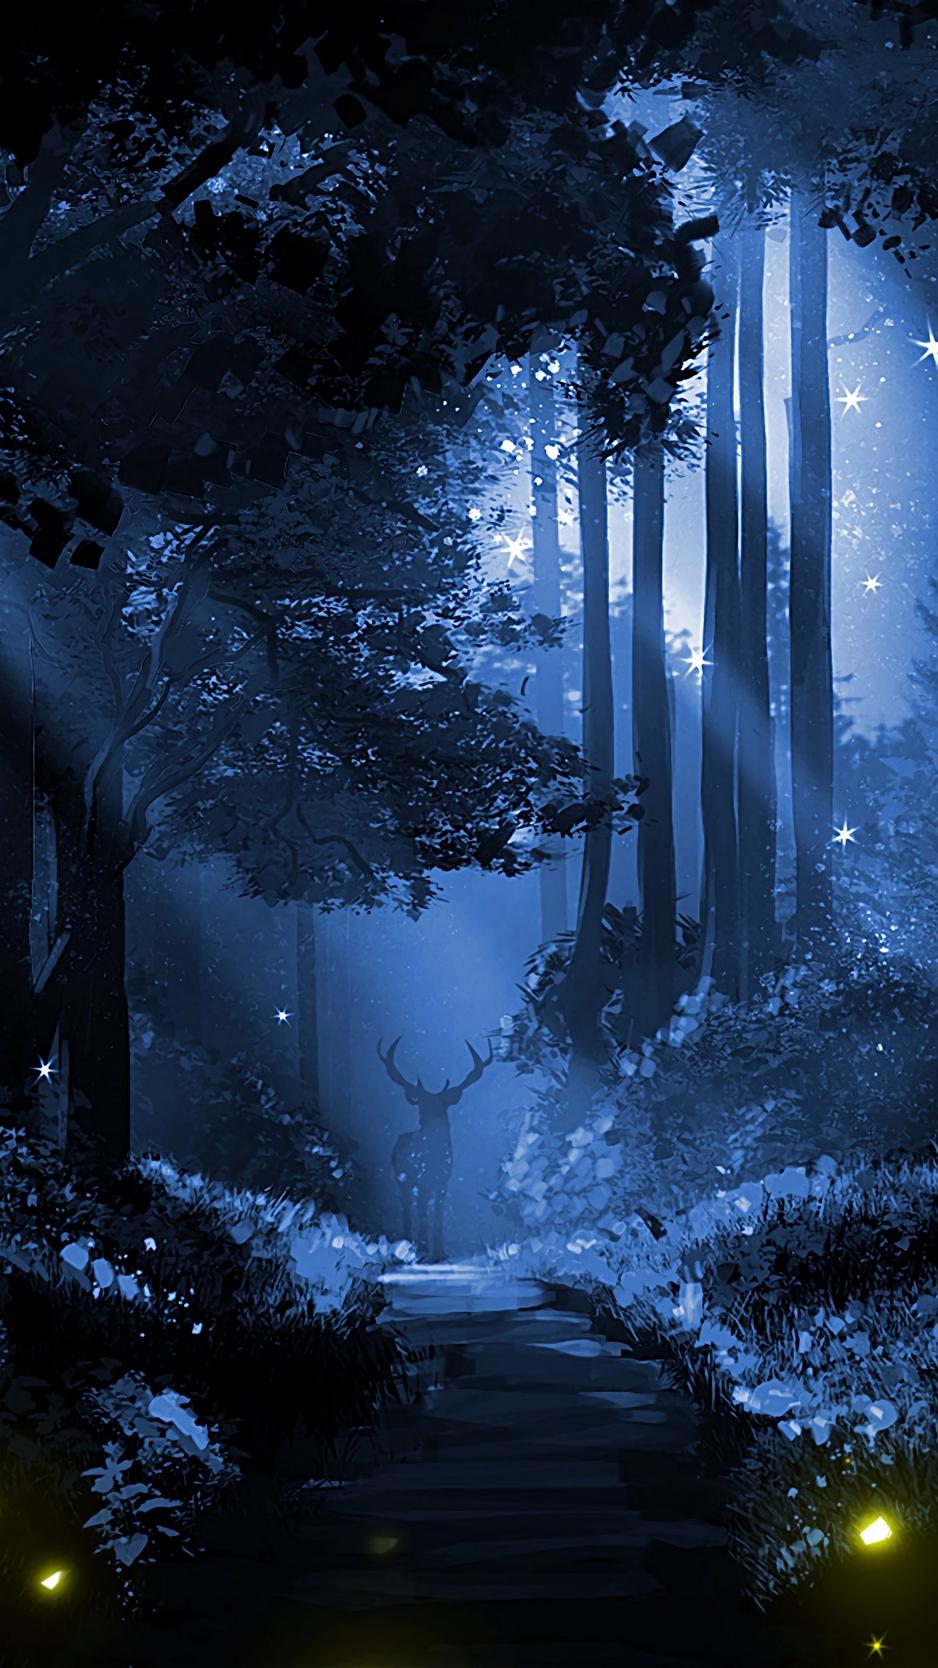 Download wallpaper 938x1668 deer, silhouette, forest, art